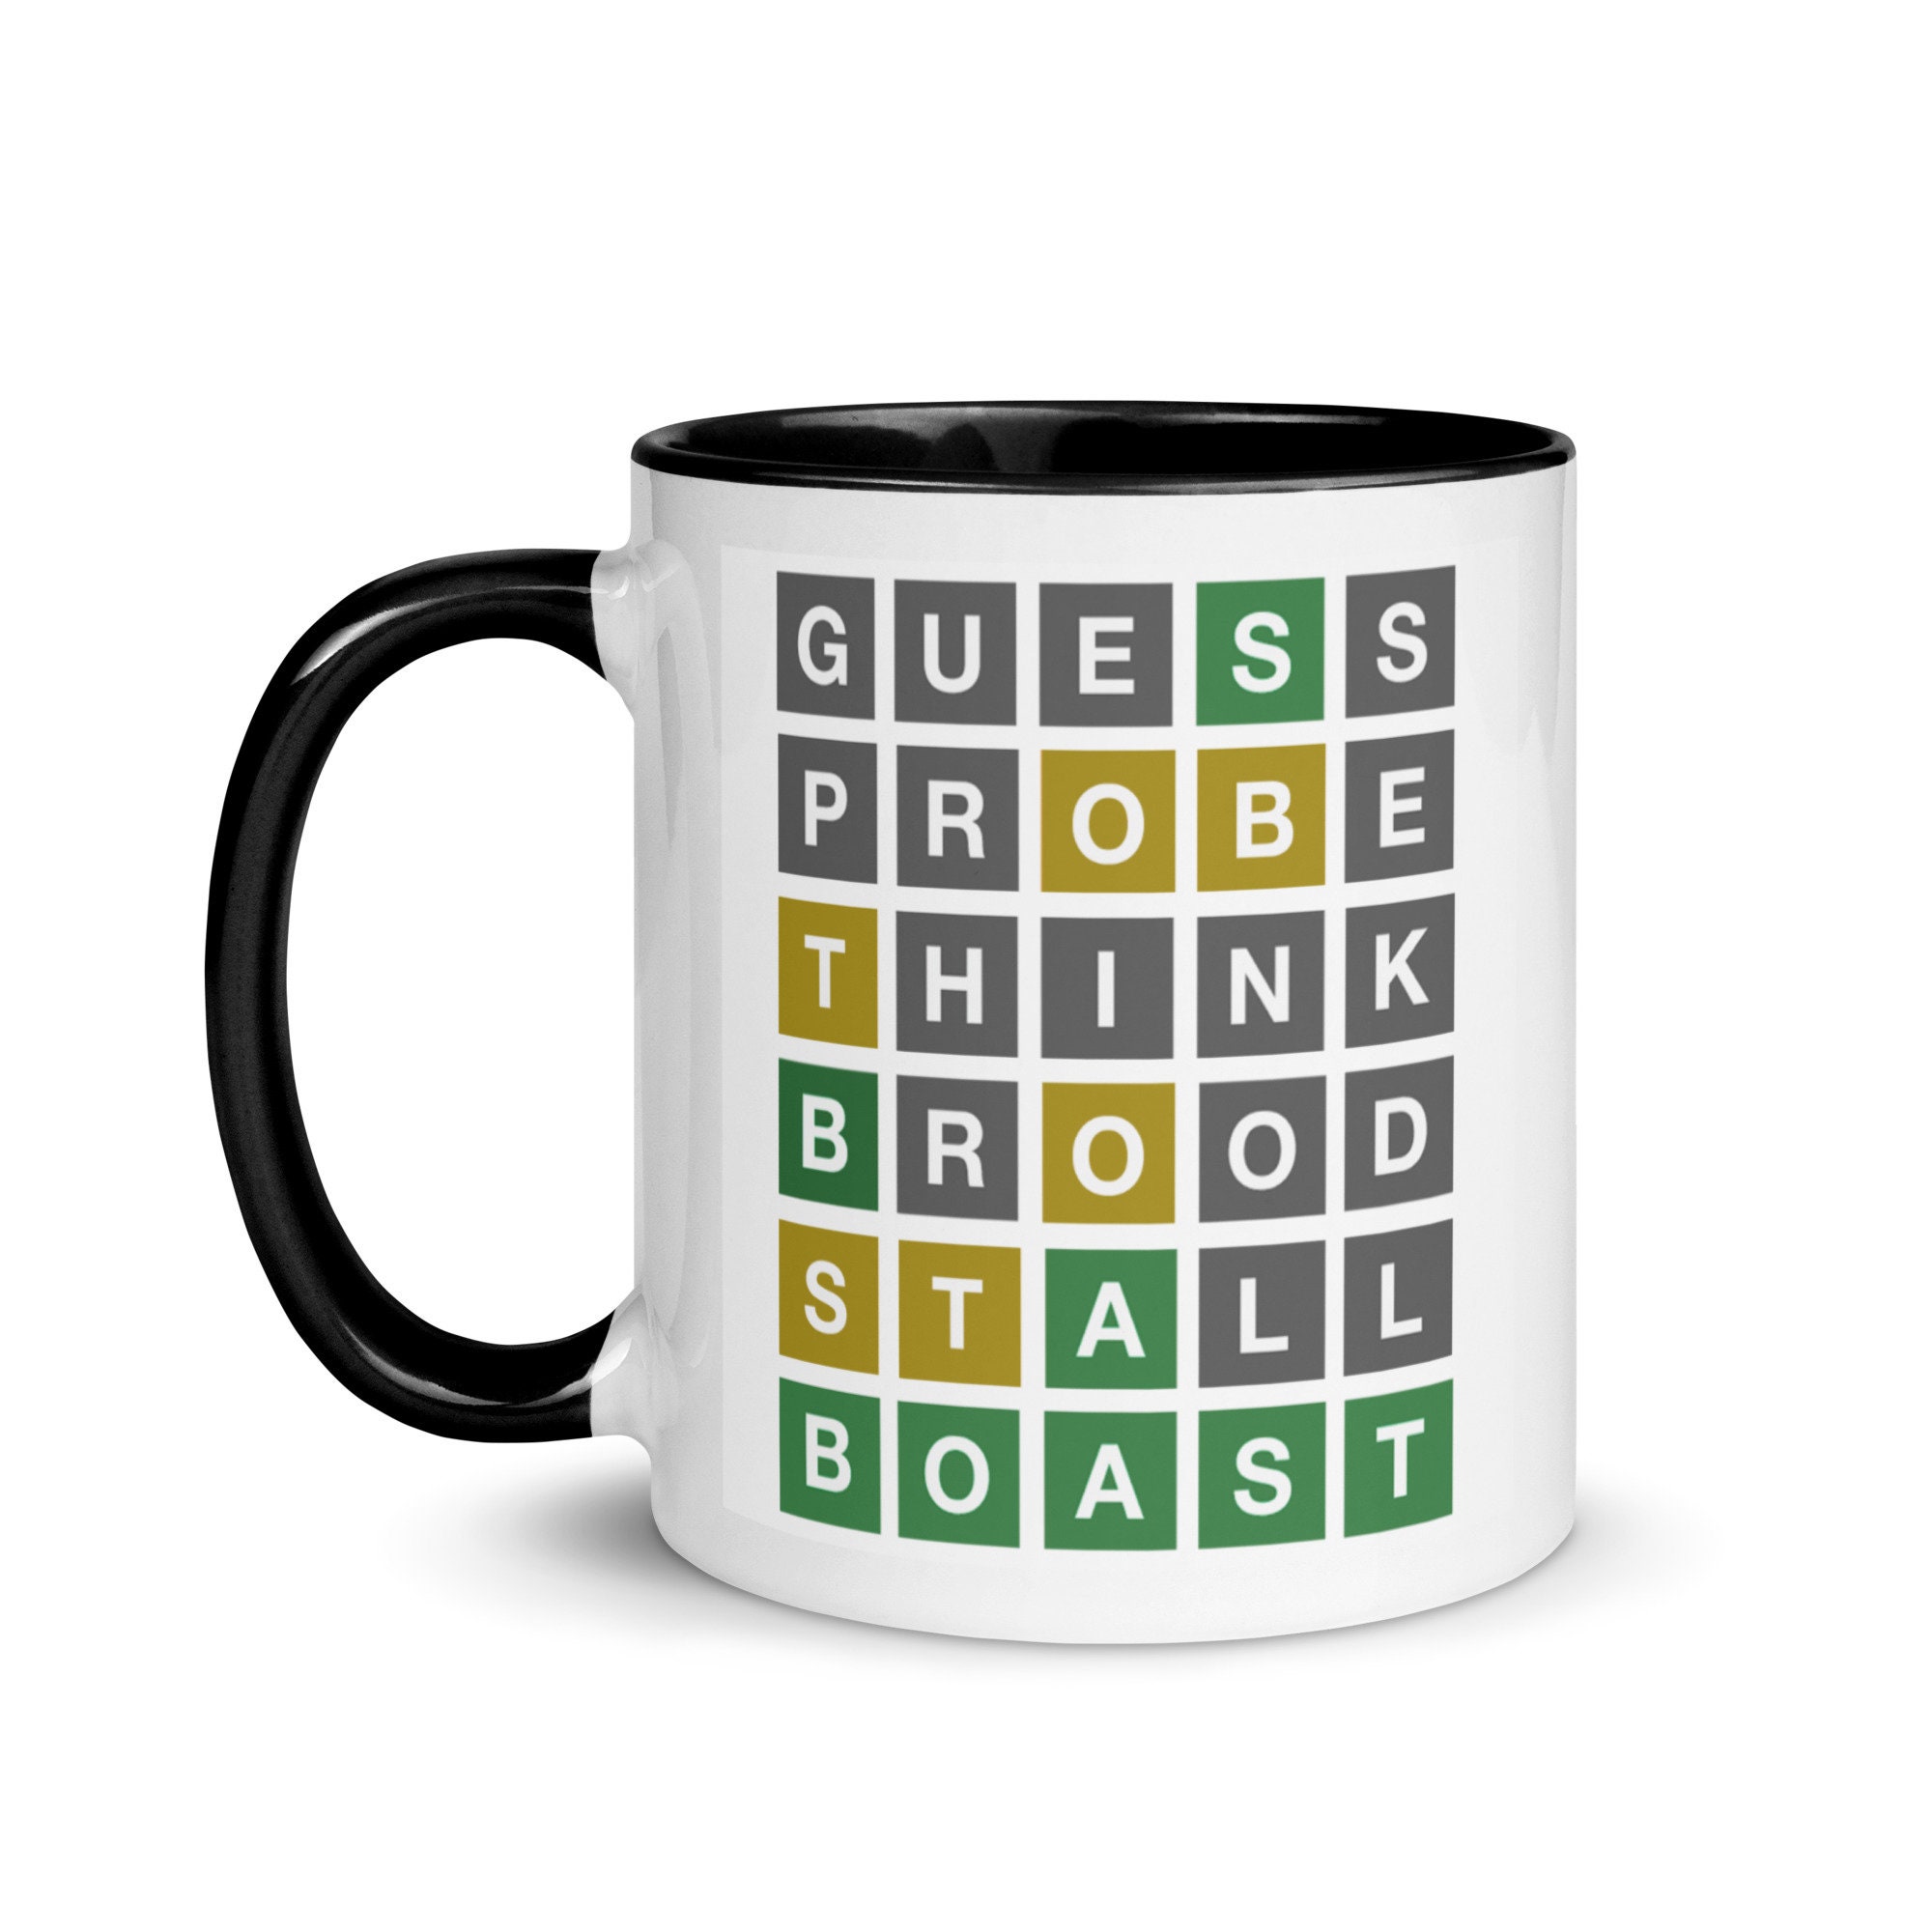 Wordle Mugs - No Minimum Quantity